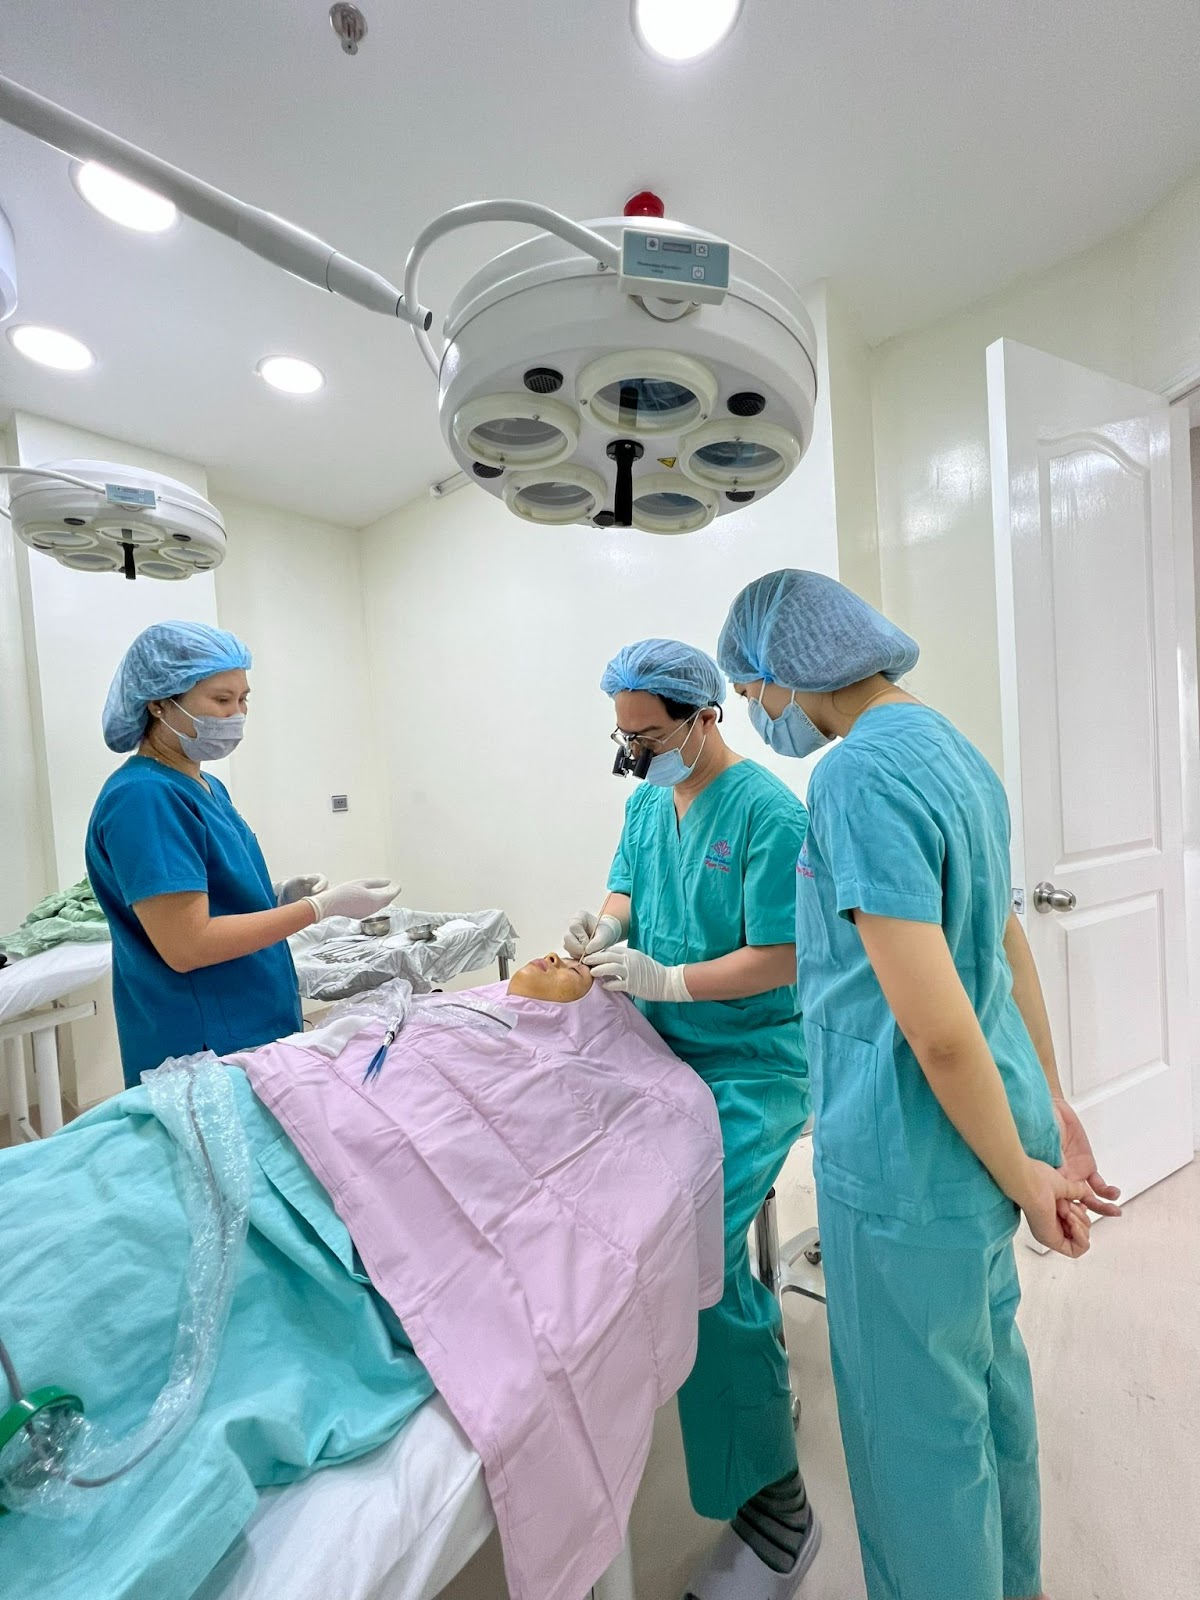 Bệnh viện Thẩm mỹ Ngọc Phú, thực hiện nâng cung mày giấu chỉ, do chính tay các bác sĩ chuyên khoa mắt Ngọc Phú trên 35 năm kinh nghiệm trong lĩnh vực thẩm mỹ thực hiện